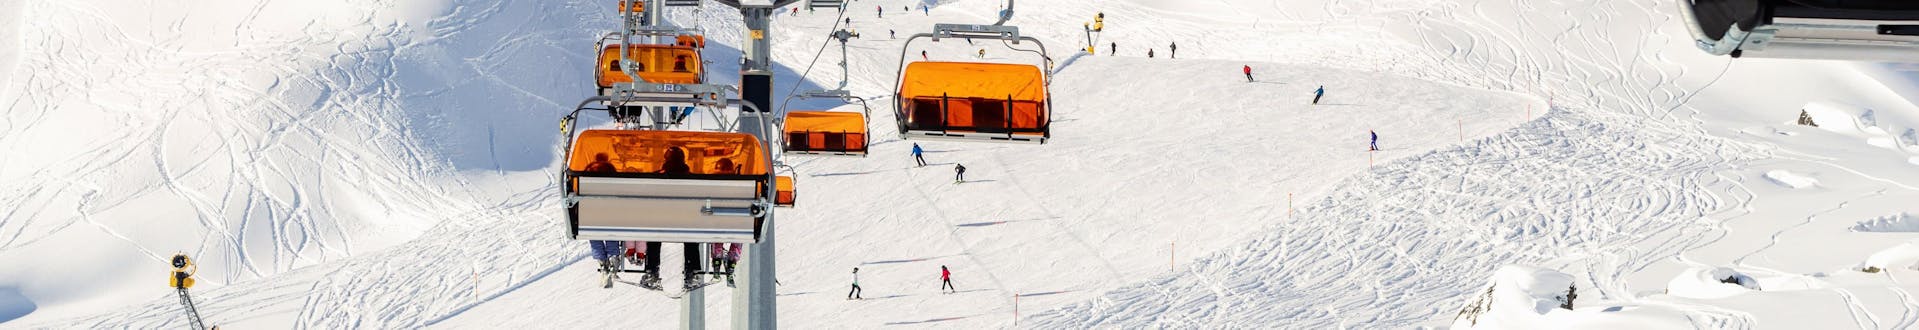 Ein Skilift und die verschneiten Pisten der Silvretta Arena Ischgl, wo eine örtliche Skischule ihre Skikurse anbietet.